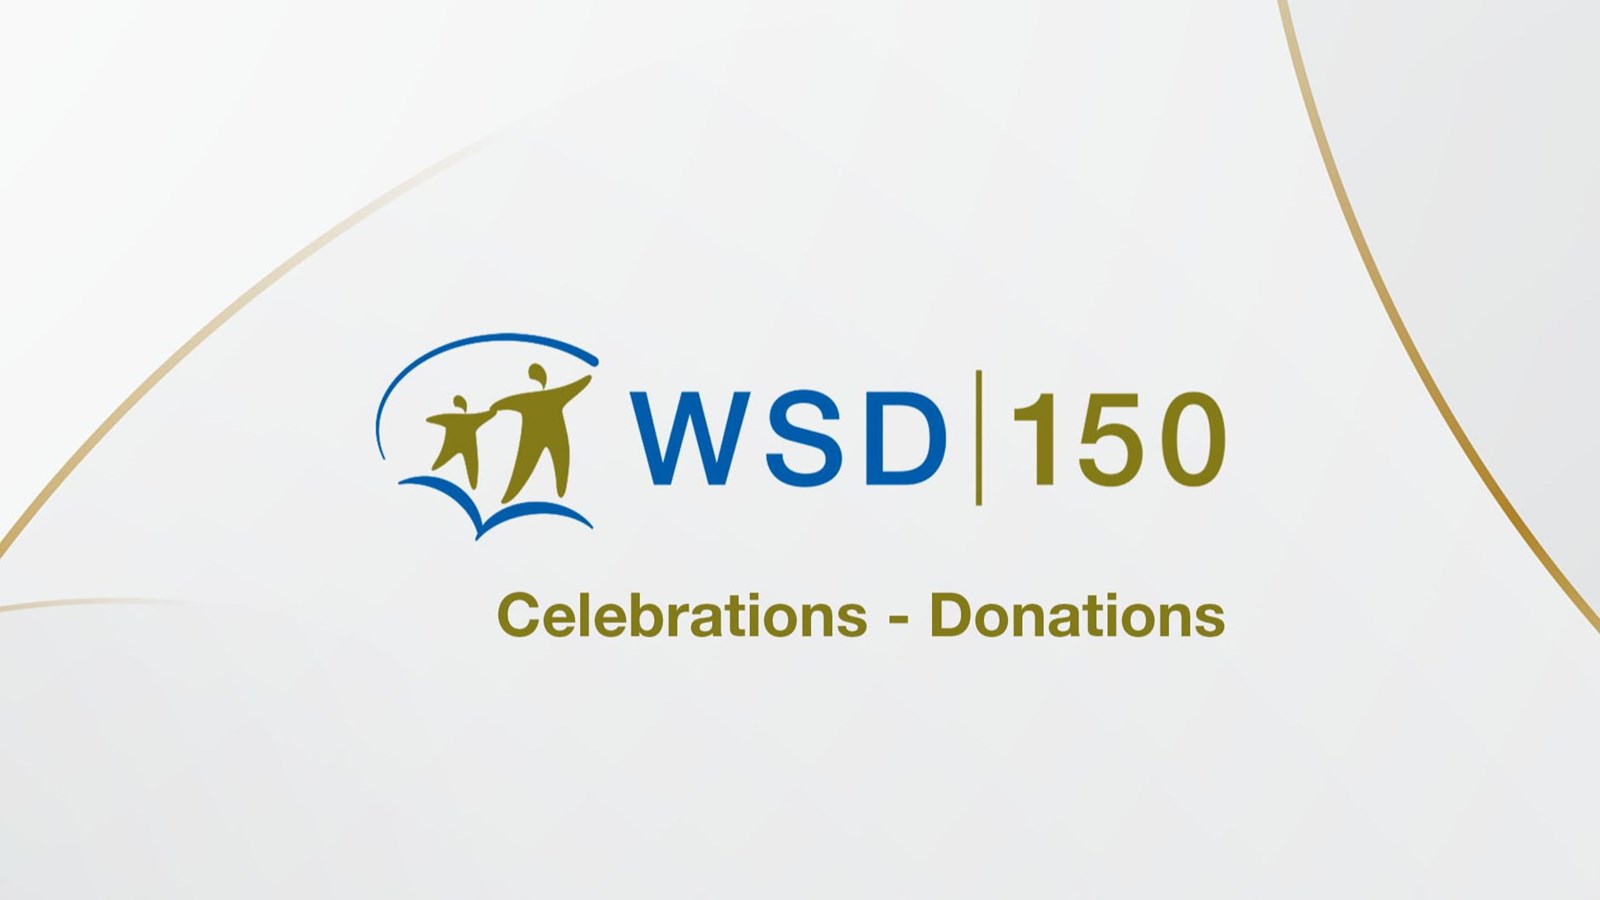 最新版水务署150庆祝活动-捐款